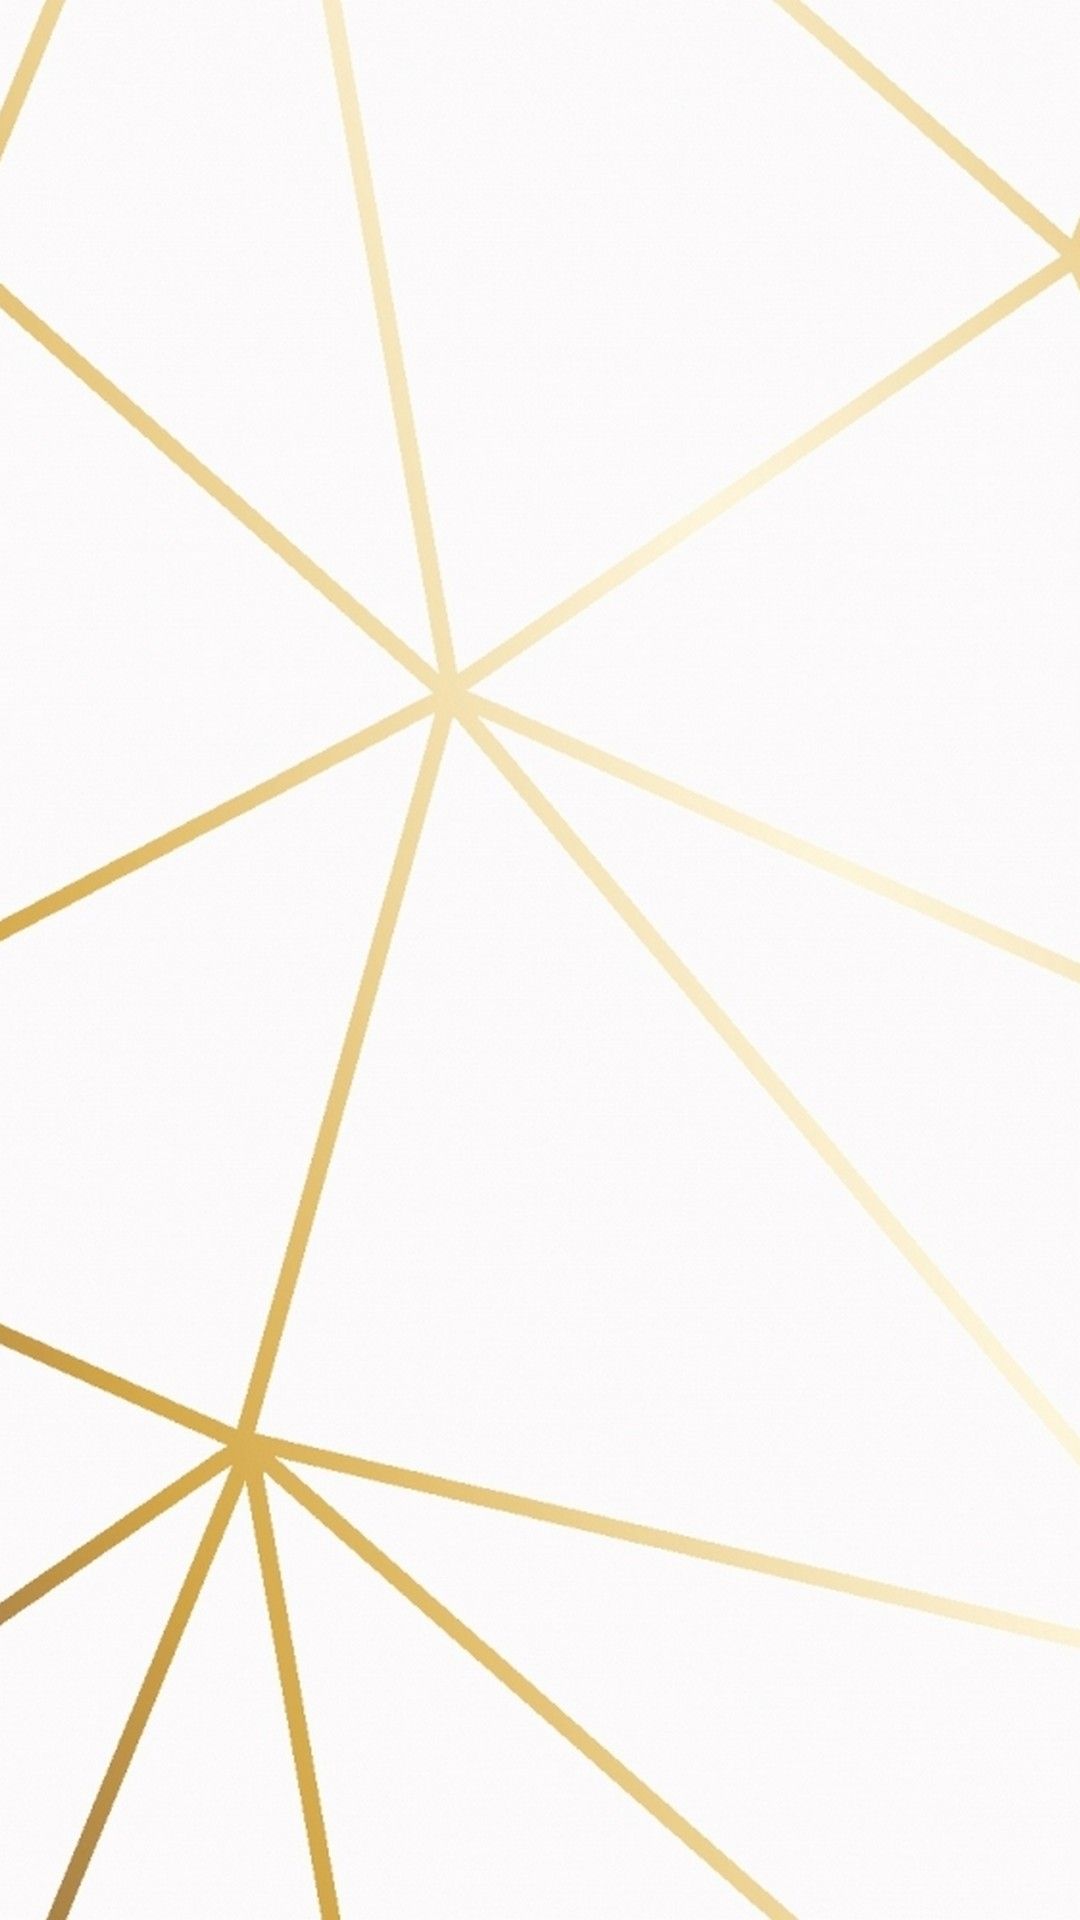 Blanco y Dorado iPhone Fondos de pantalla | iPhoneWallpapers | Fondo de pantalla de oro